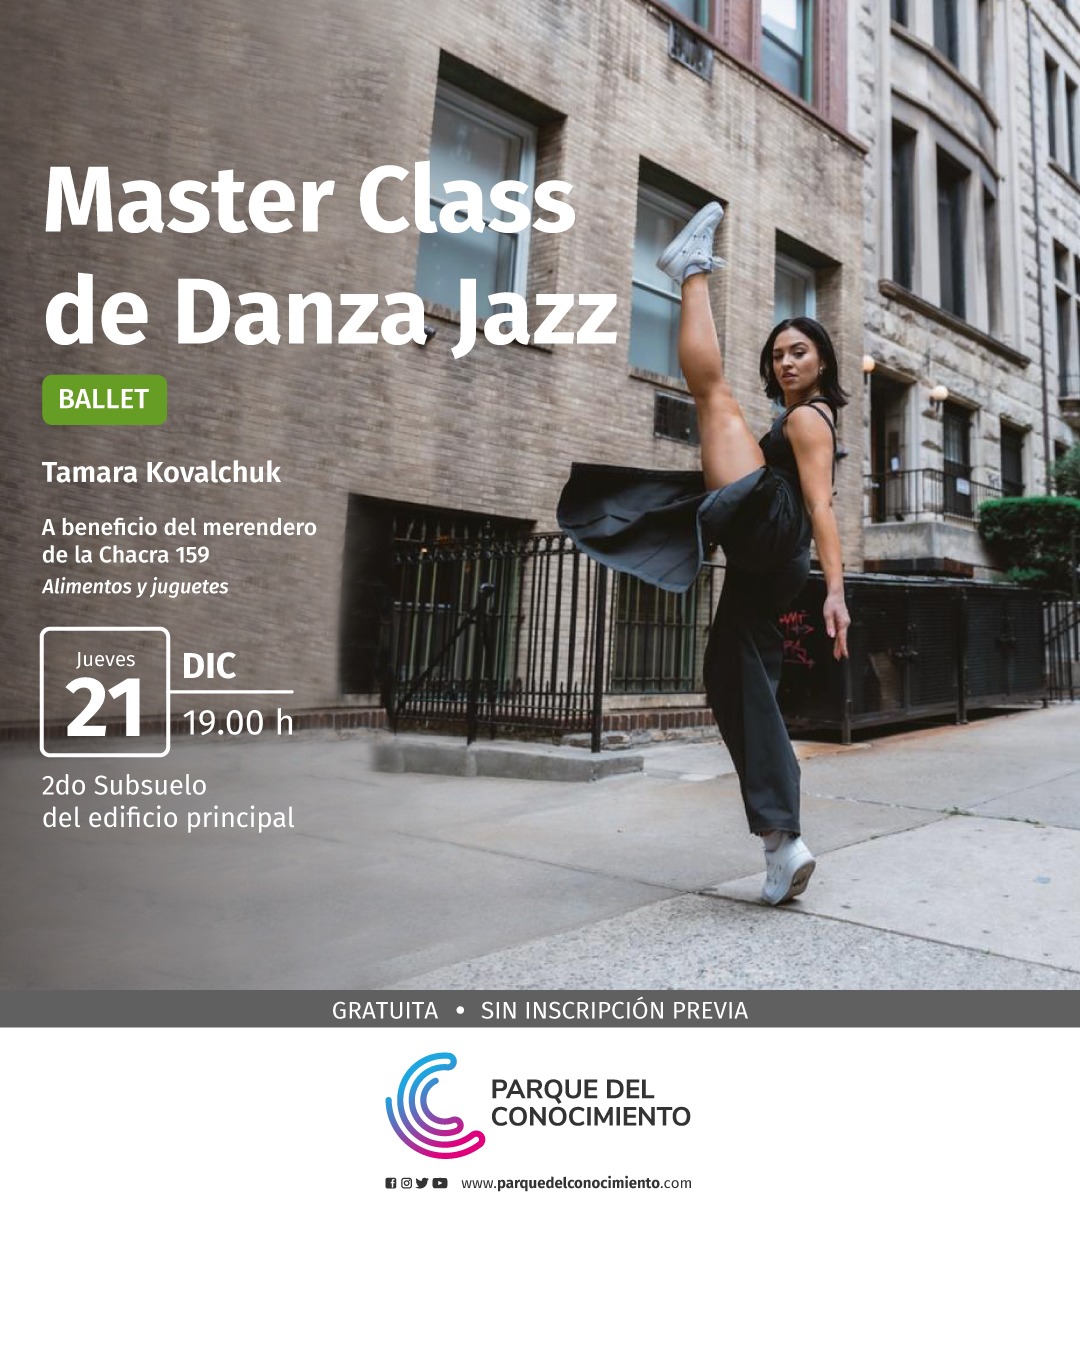 Invitan a una Master Class de Danza Jazz en el Parque del Conocimiento a cargo de la bailarina Tamara Kovalchuk imagen-2